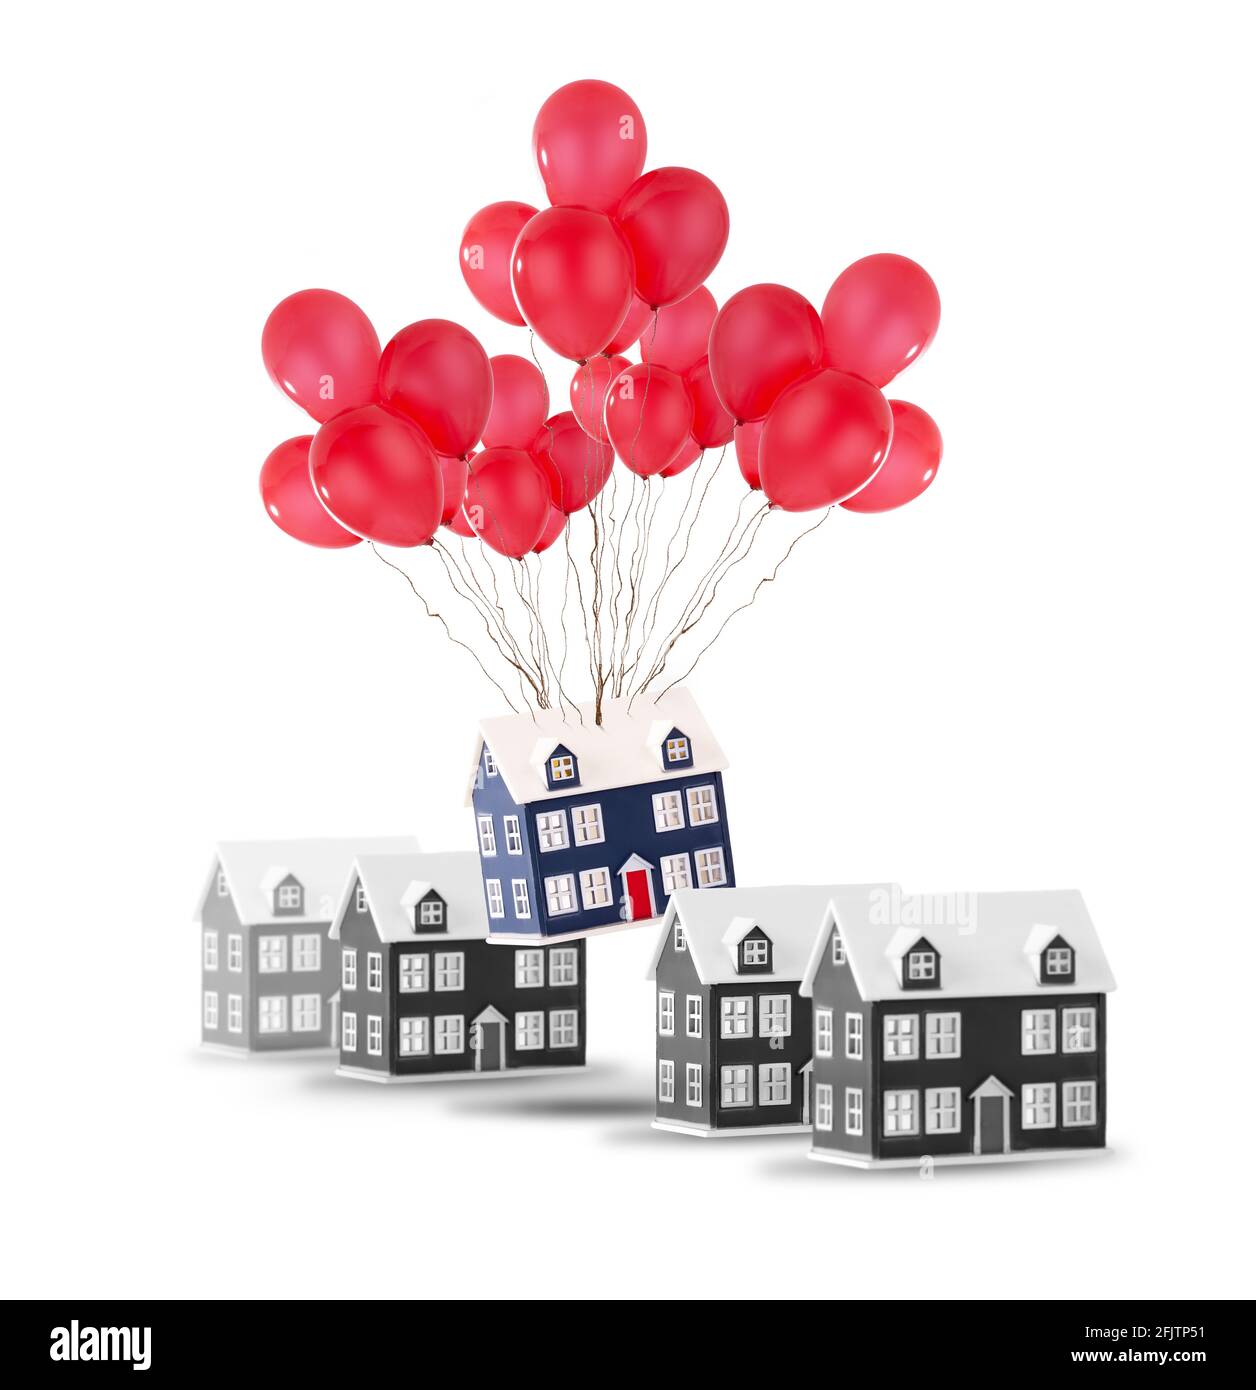 Umzugshaus-Konzept, das ein Haus in einer Reihe von Häusern zeigt, die sich mit roten Ballons hochheben. Isoliert auf weißem Hintergrund mit Kopierbereich Stockfoto